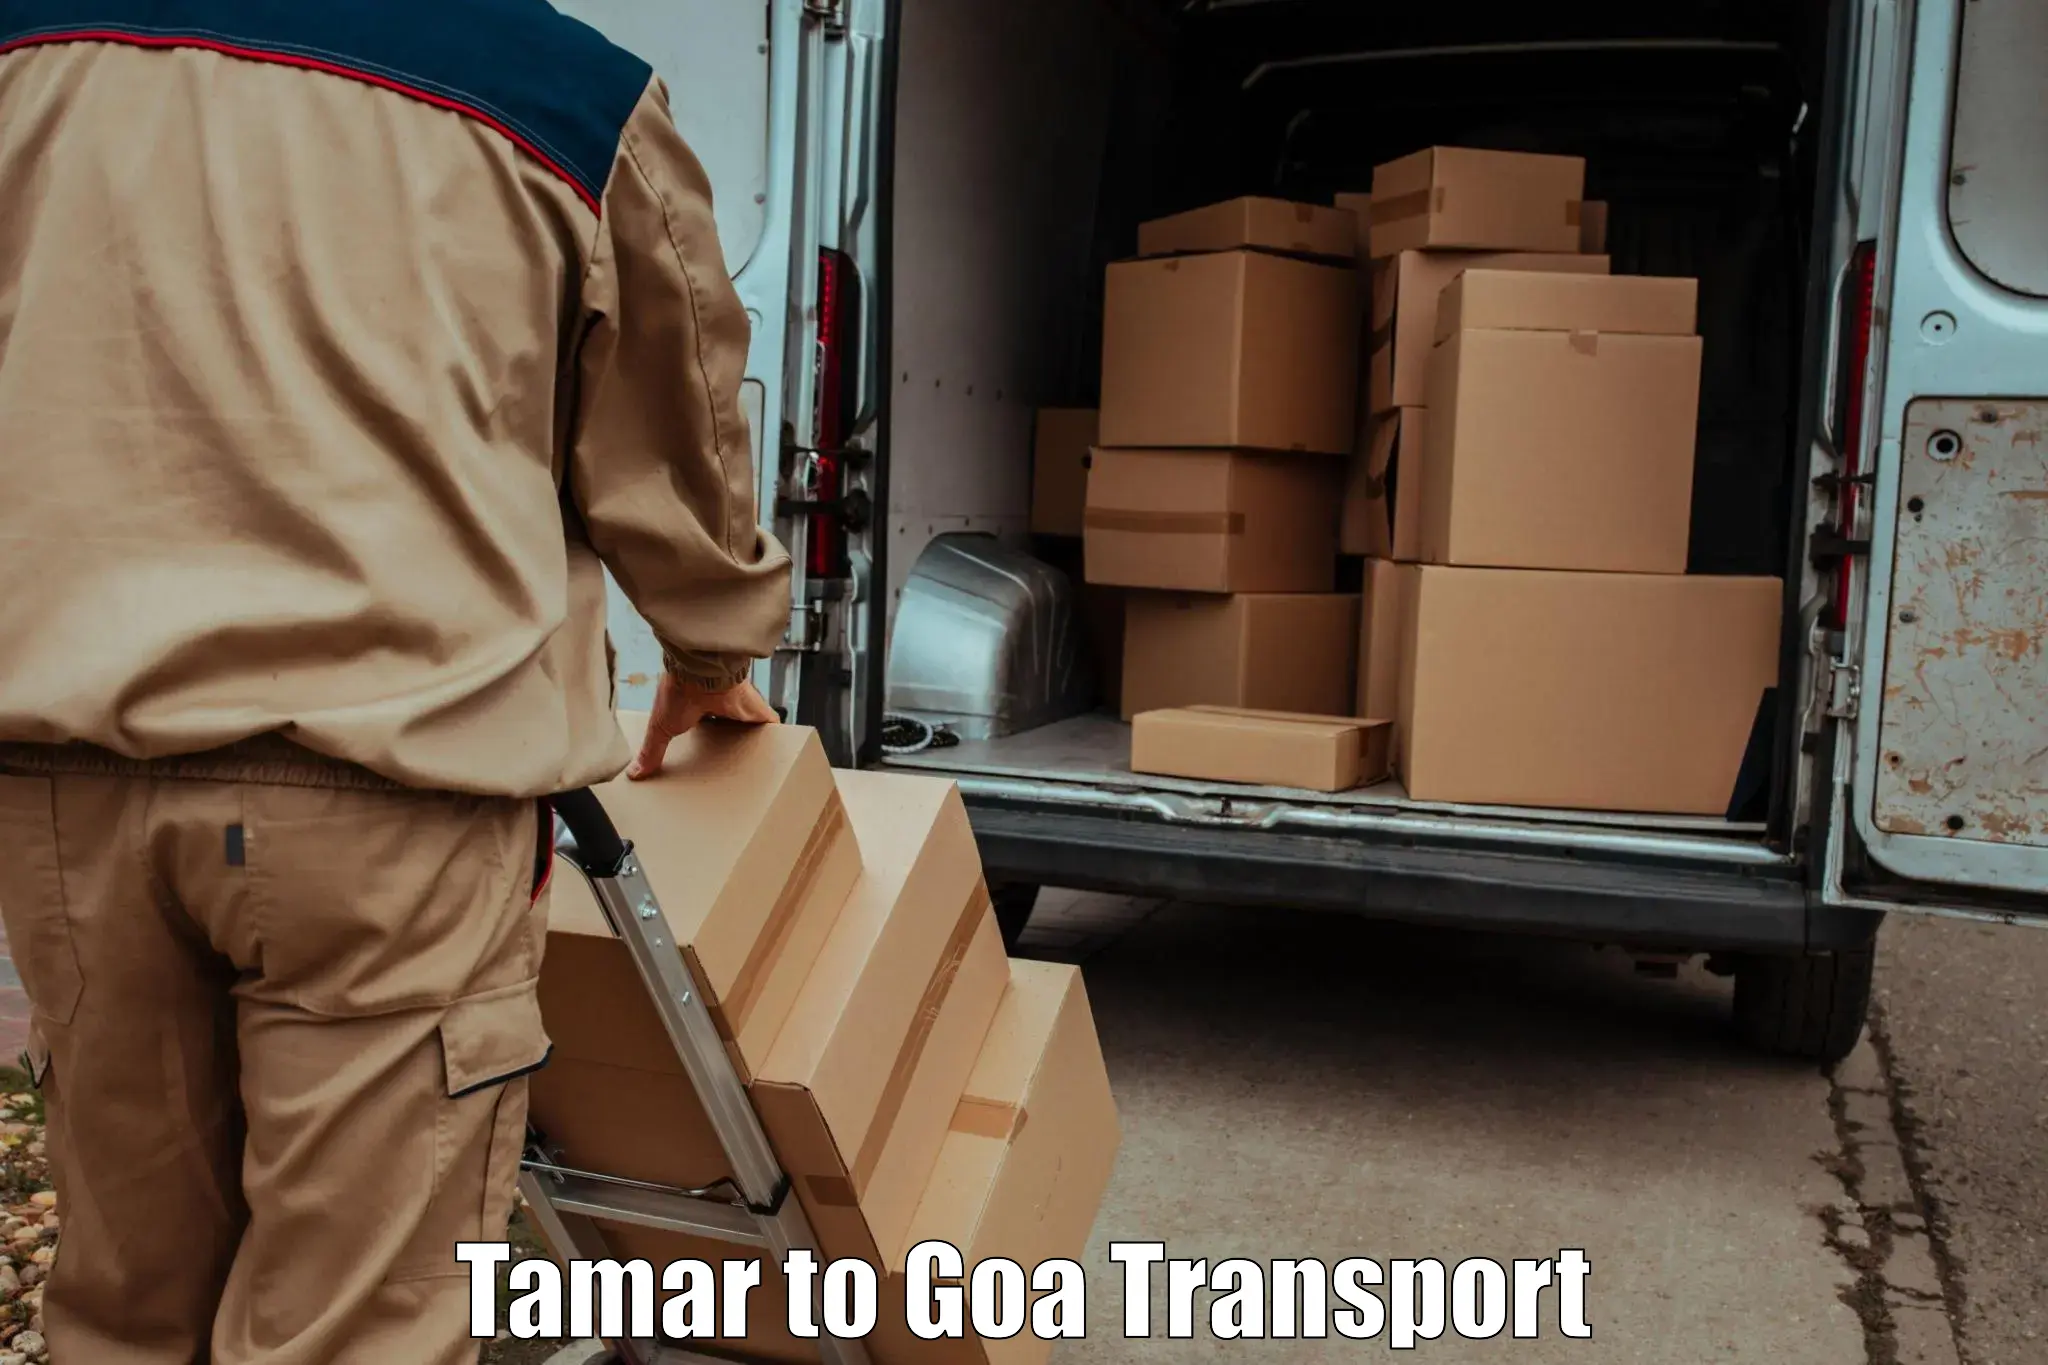 Door to door transport services Tamar to South Goa